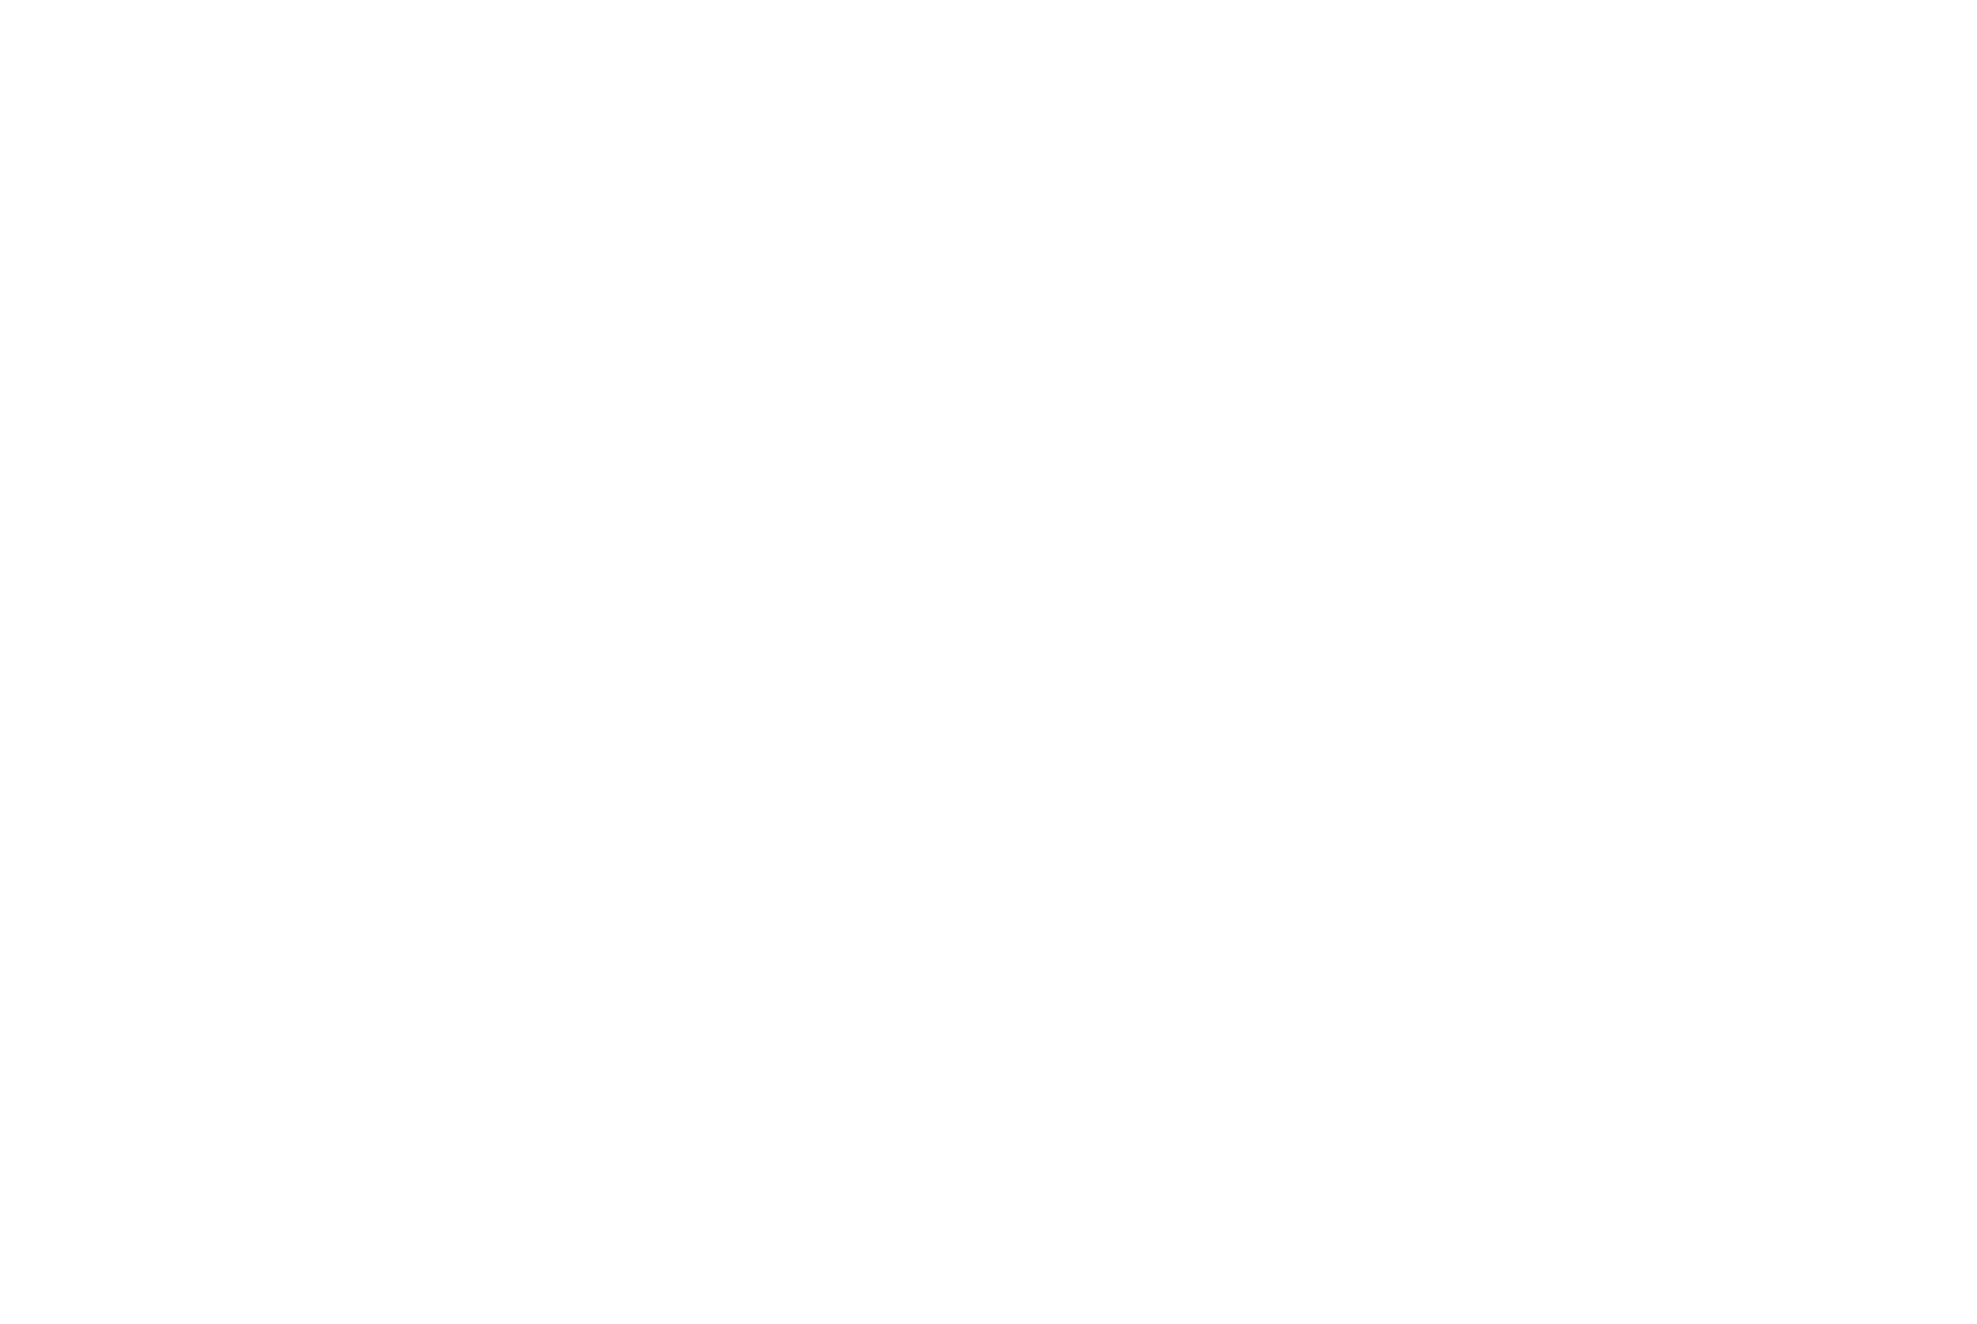 Logo Landkreis Hof